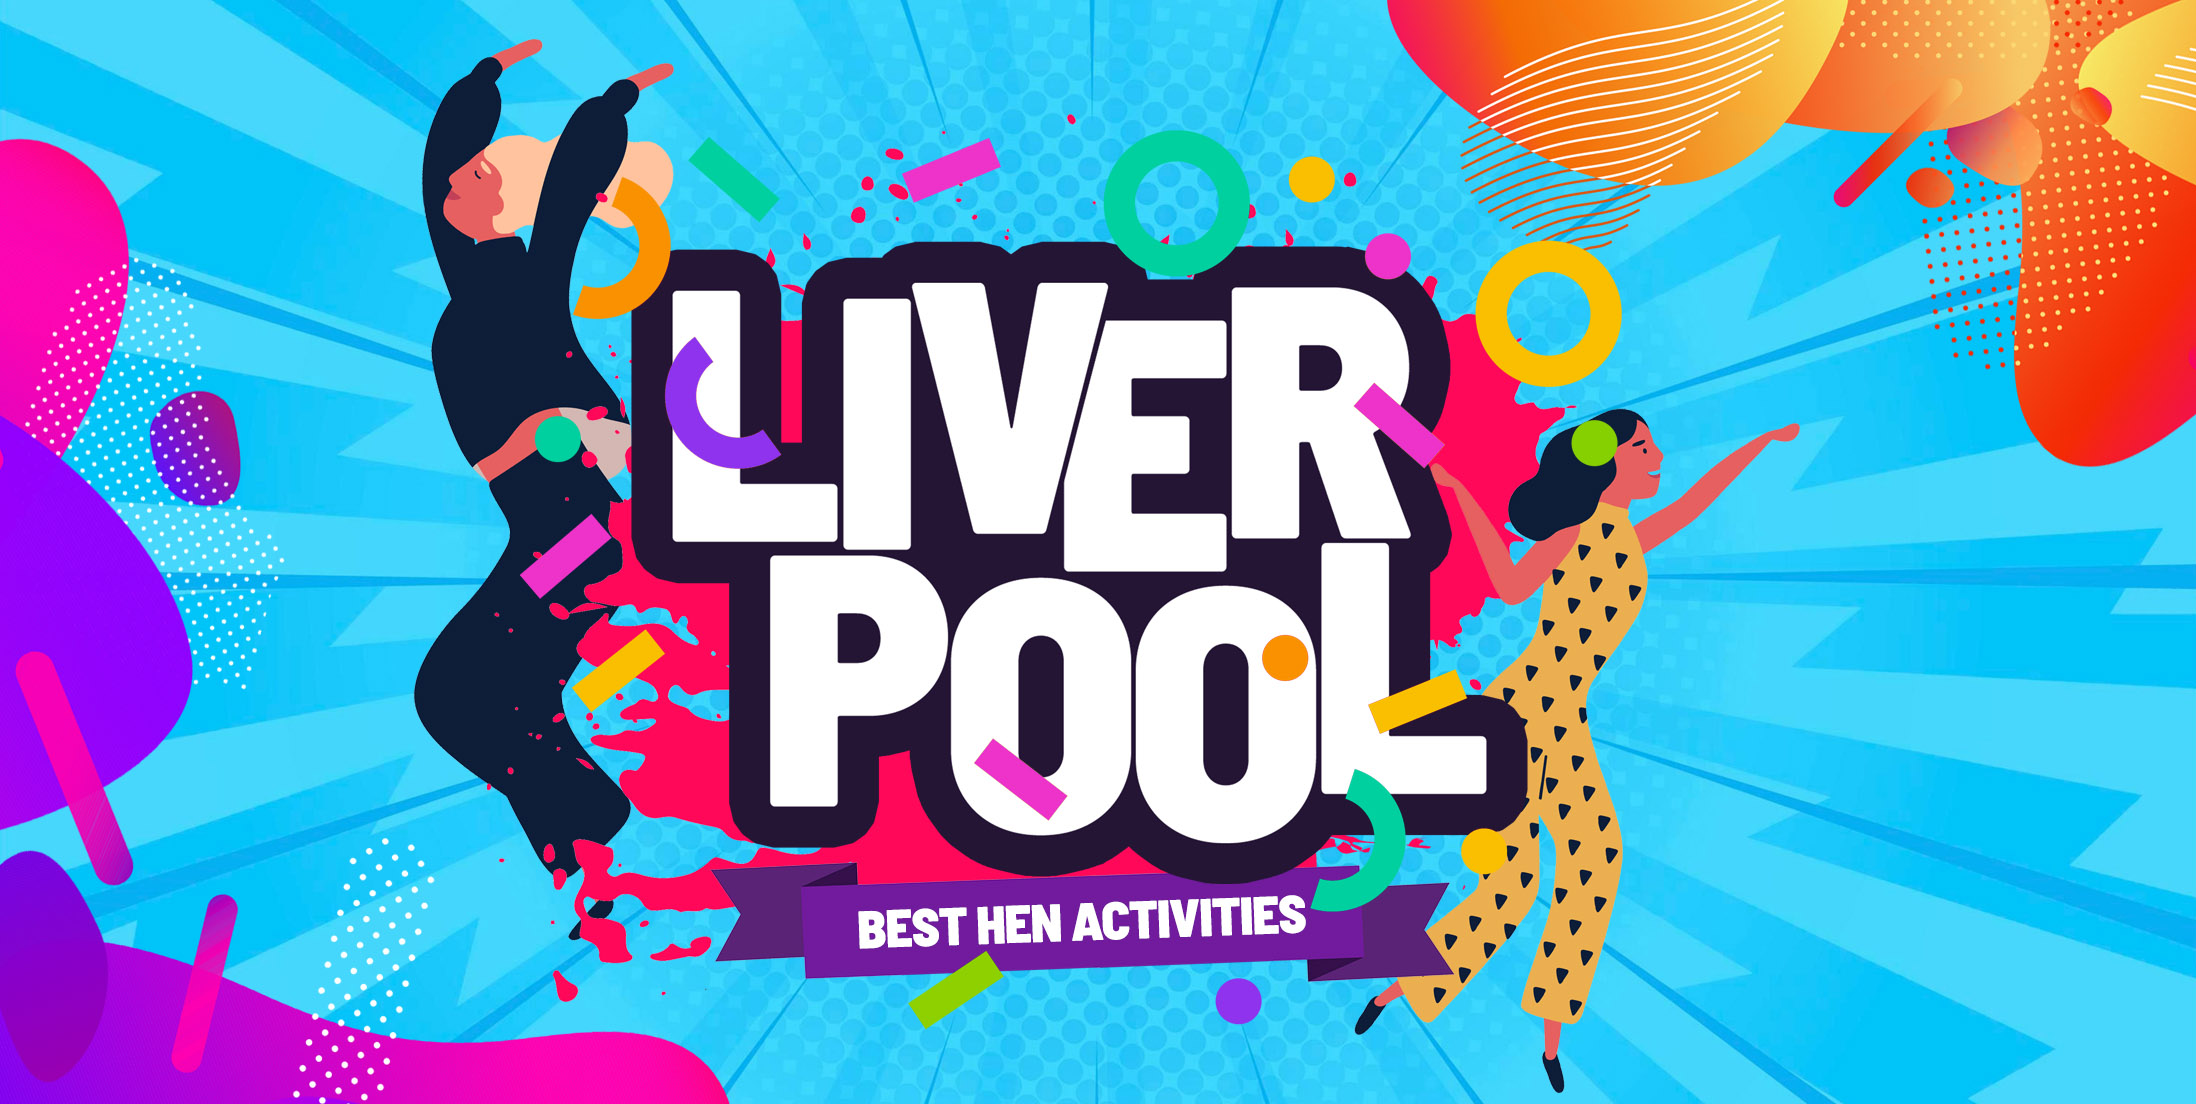 Top 10 Hen Party Activities & Ideas in Liverpool